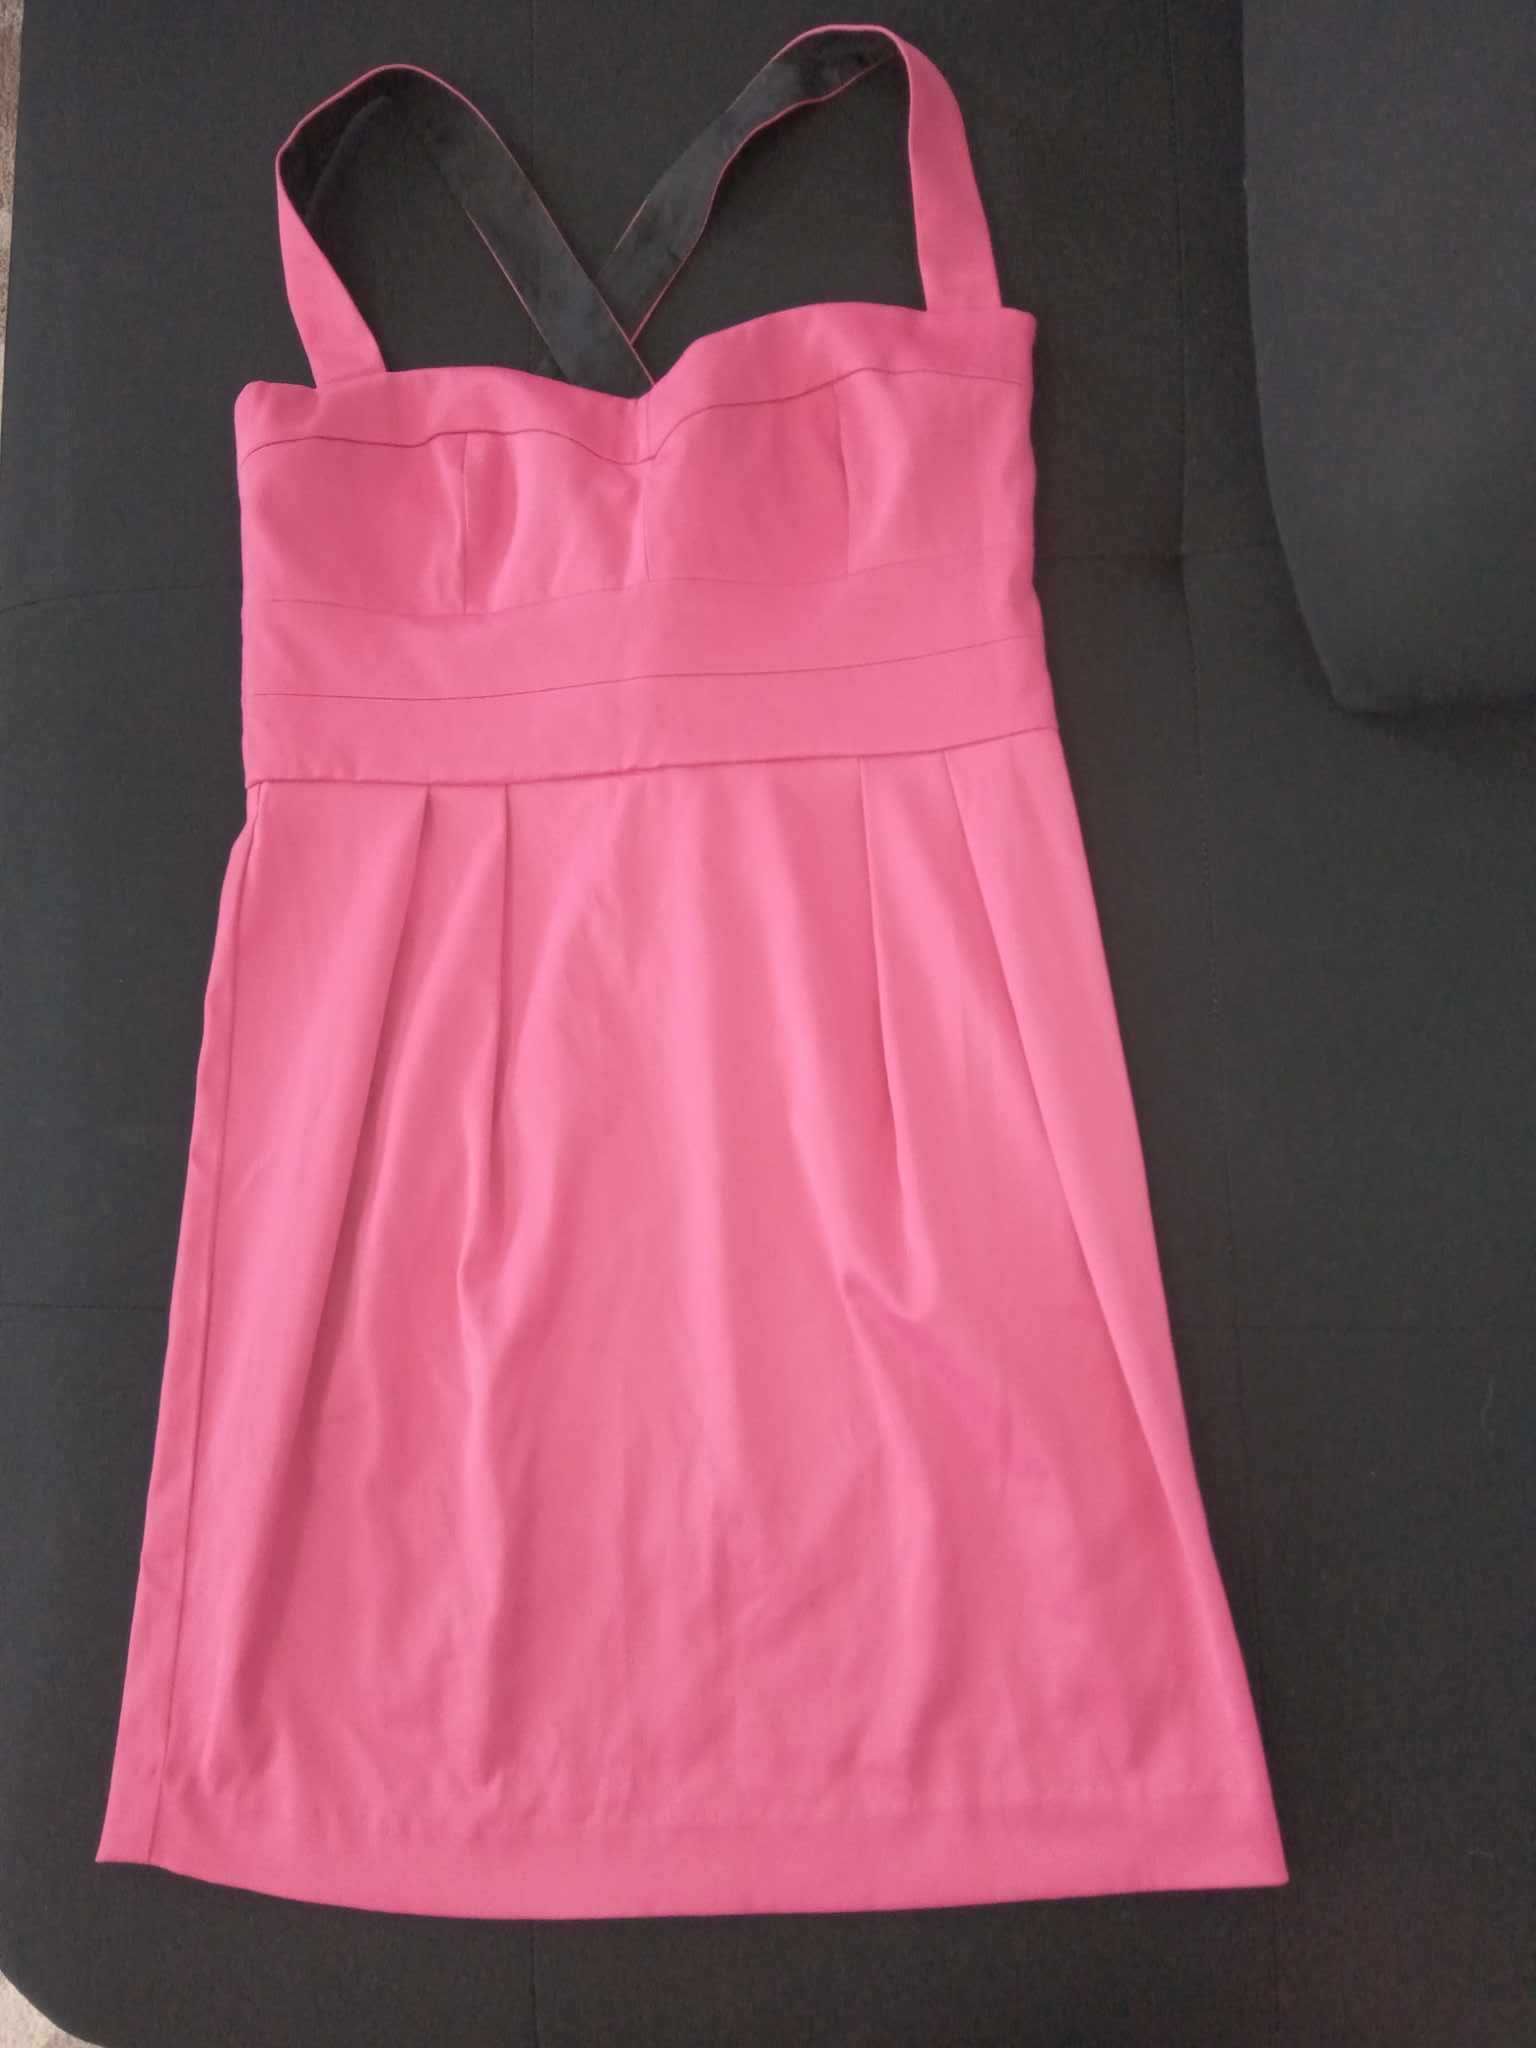 Розова рокля размер Л-М. Нова.